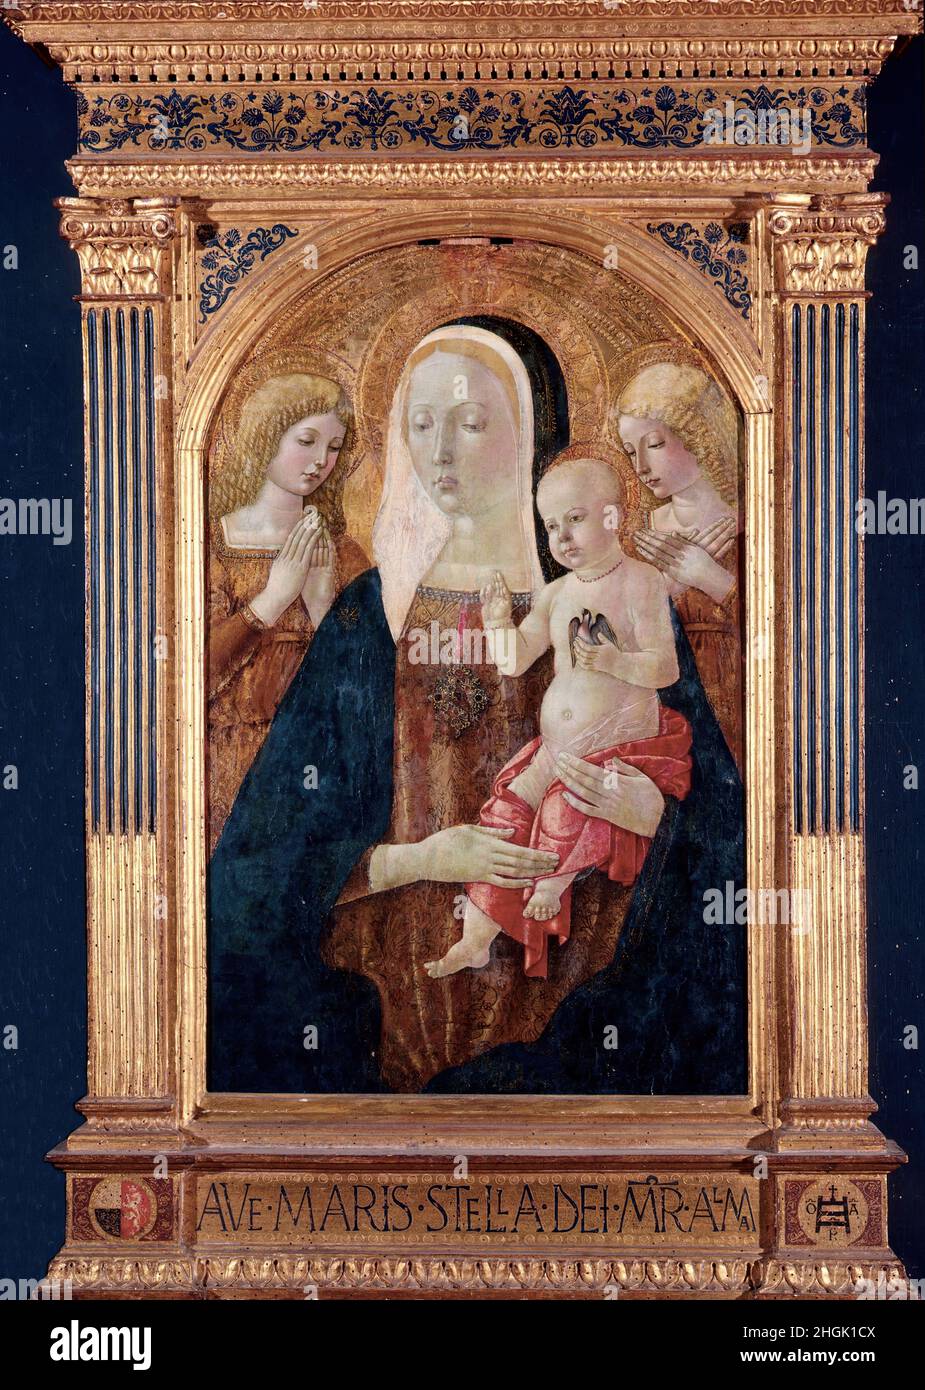 La Vergine e il Bambino con gli Angeli - 1475c. - tempera su tela 66 x 41,8 cm - di Benvenuto Girolamo Foto Stock